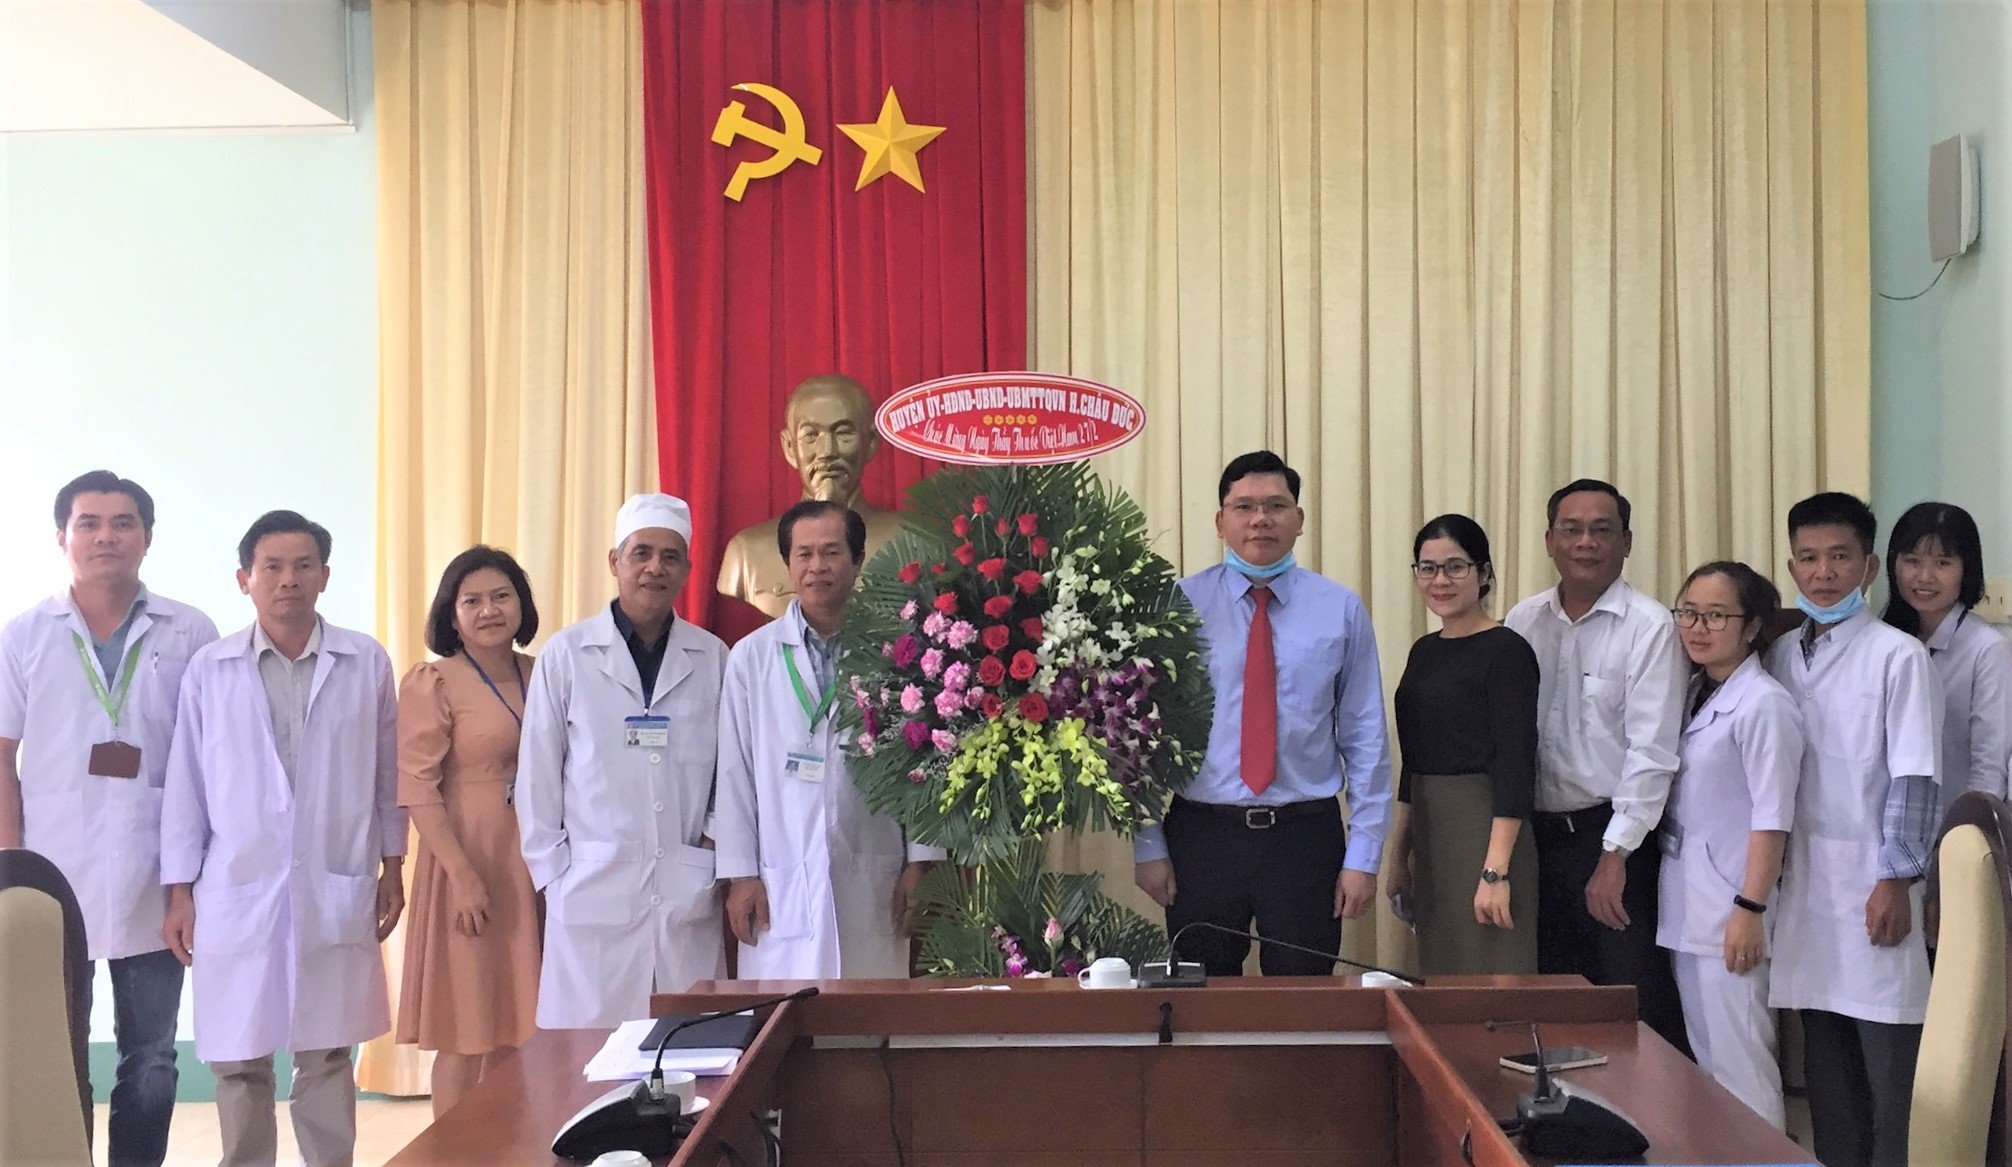 Ông Hoàng Nguyên Dinh, Chủ tịch UBND huyện Châu Đức (thứ 6 từ phải) thăm, chúc mừng các y, bác sĩ Bệnh viện Tâm thần tỉnh.